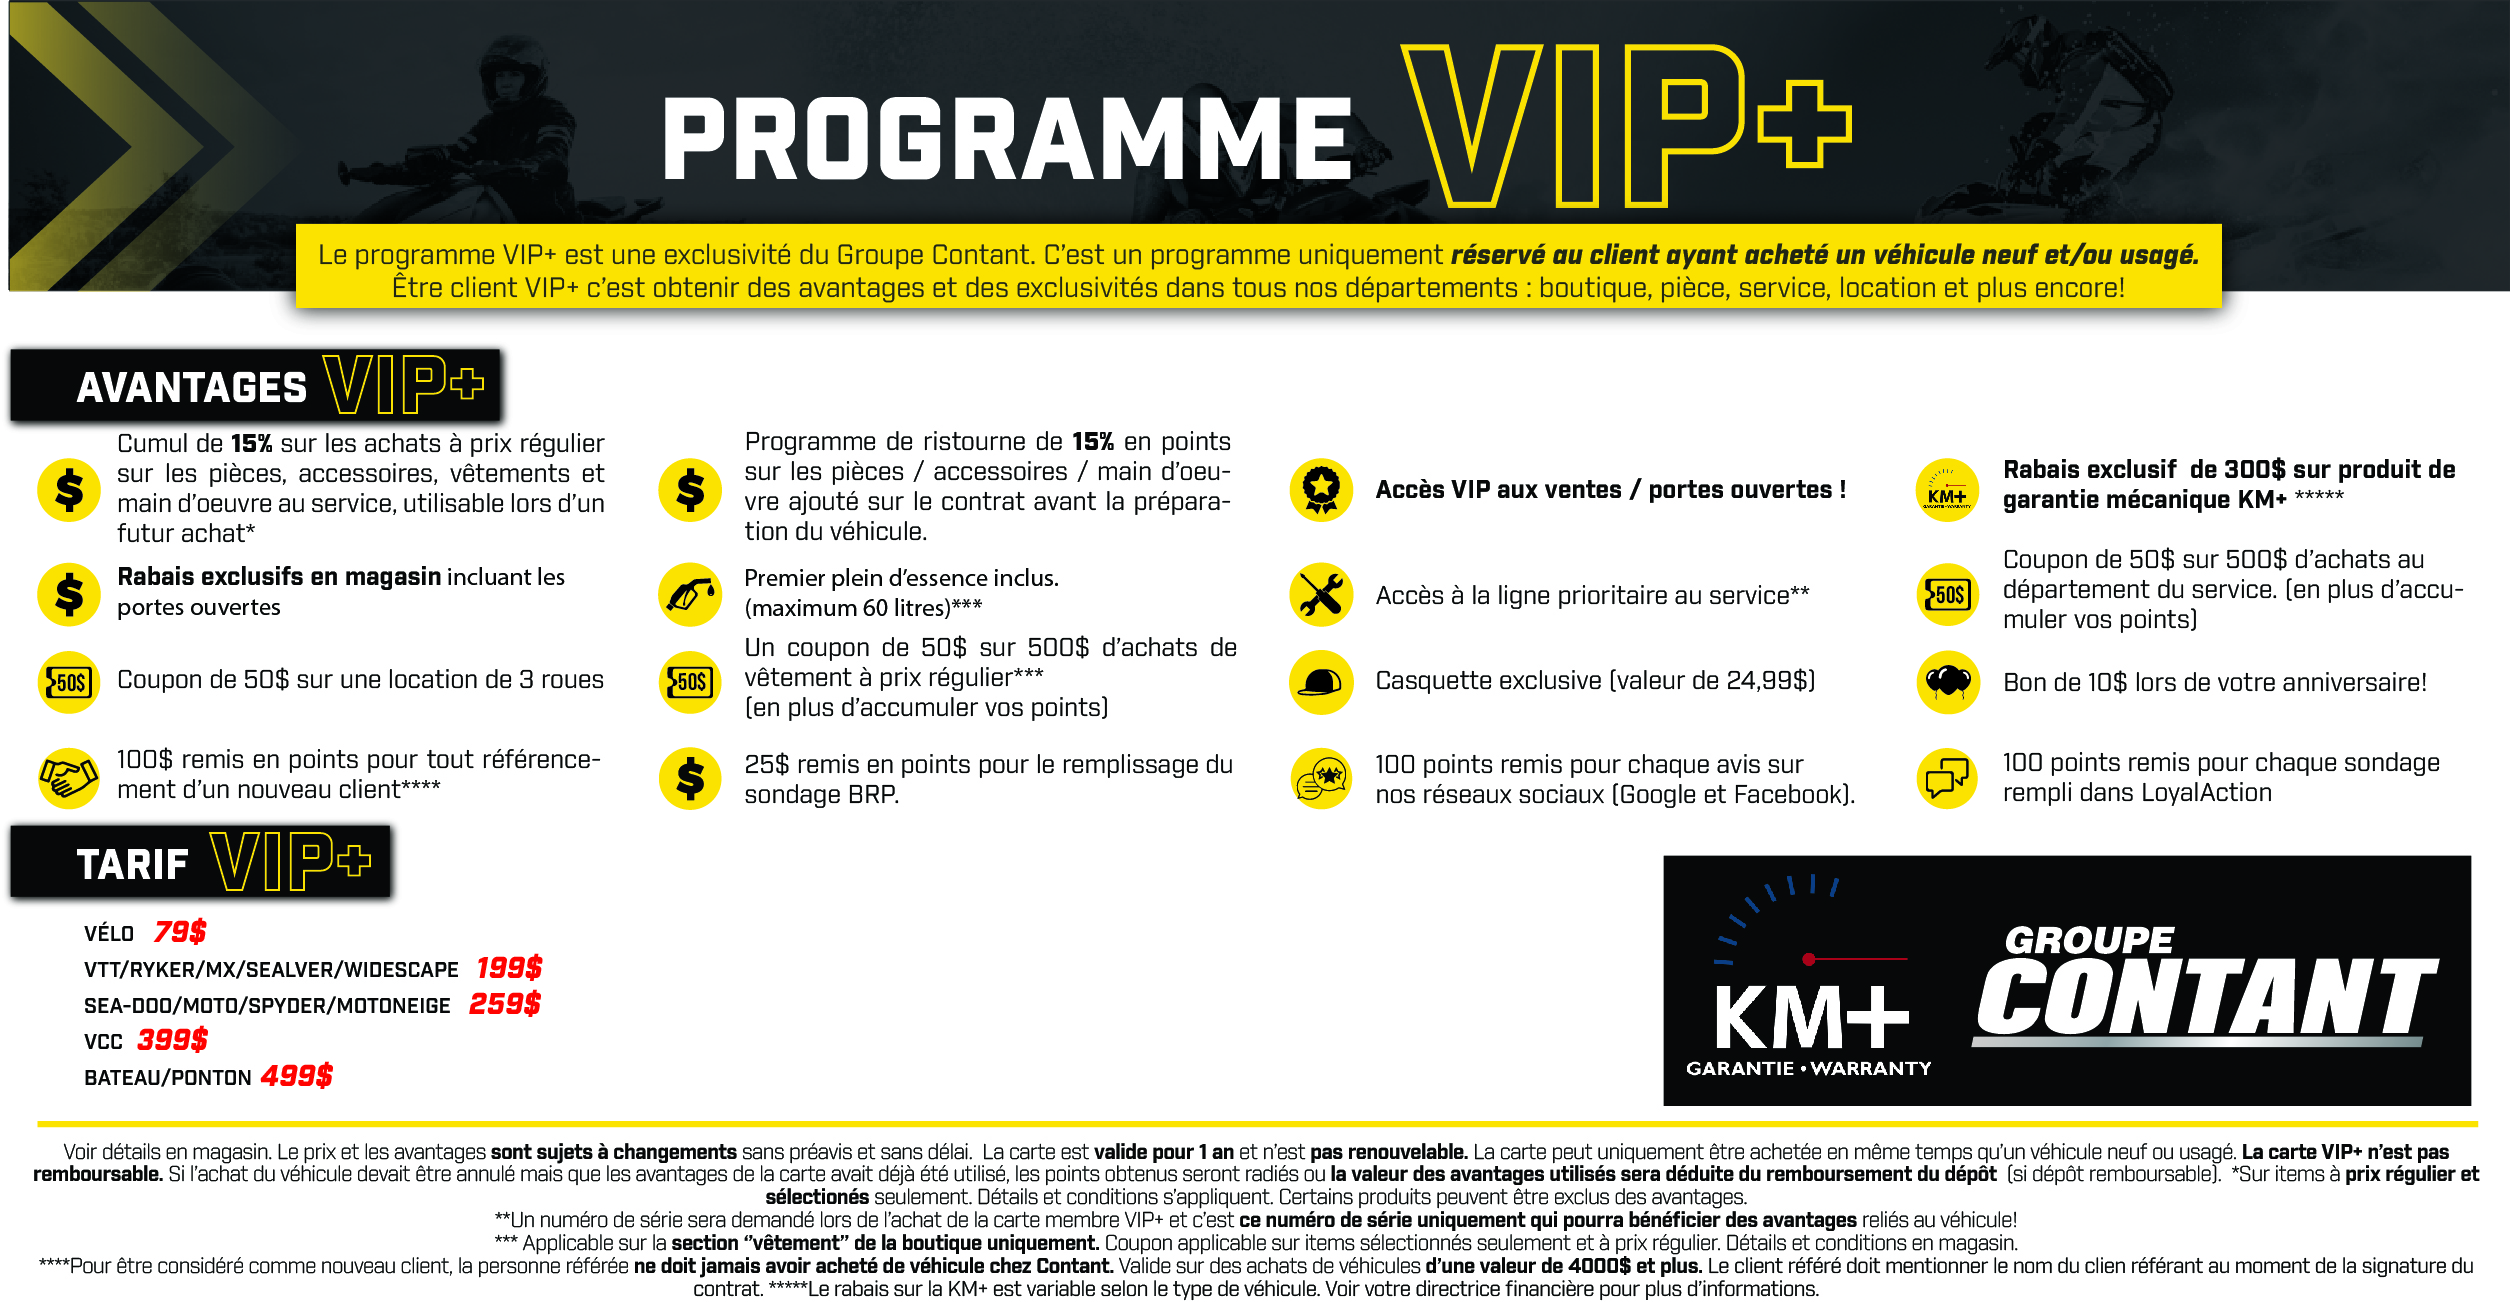 PROGRAMME VIP+. Réservé aux acheteurs de véhicule chez le Groupe Contant!